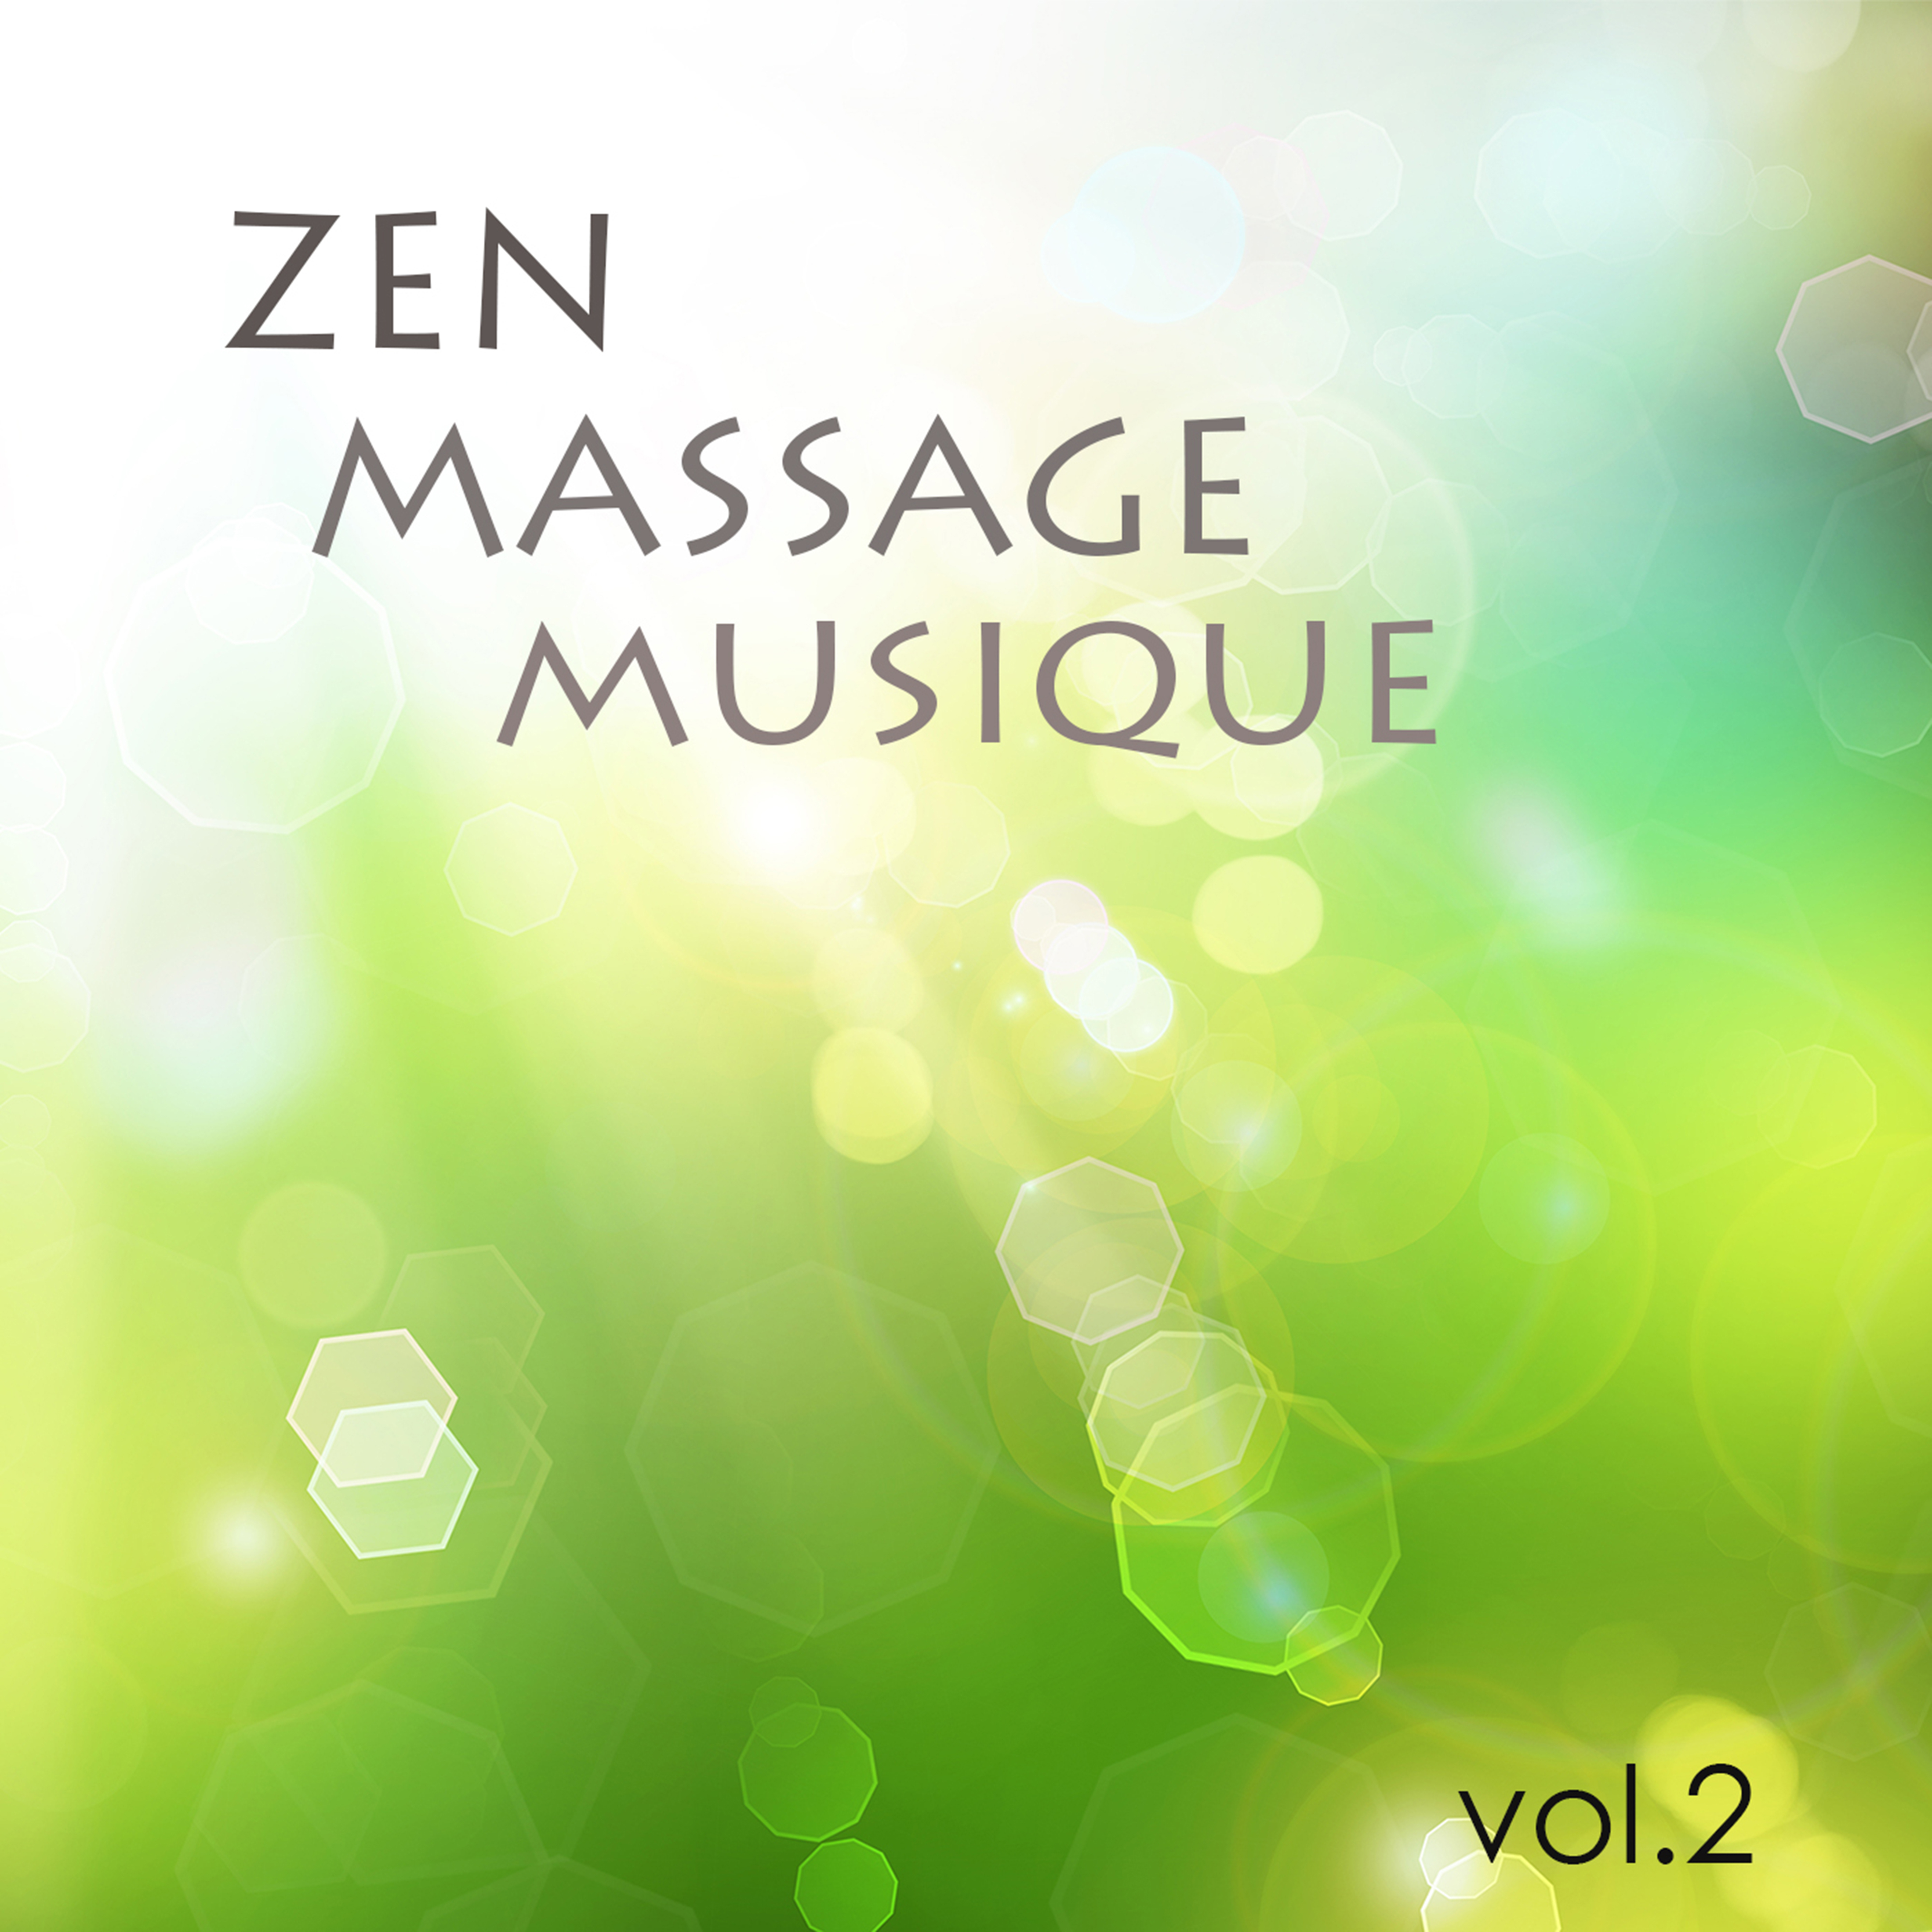 Zen Massage Musique, Vol. 2 - Musique zen de fond pour massage, bien-etre et detente